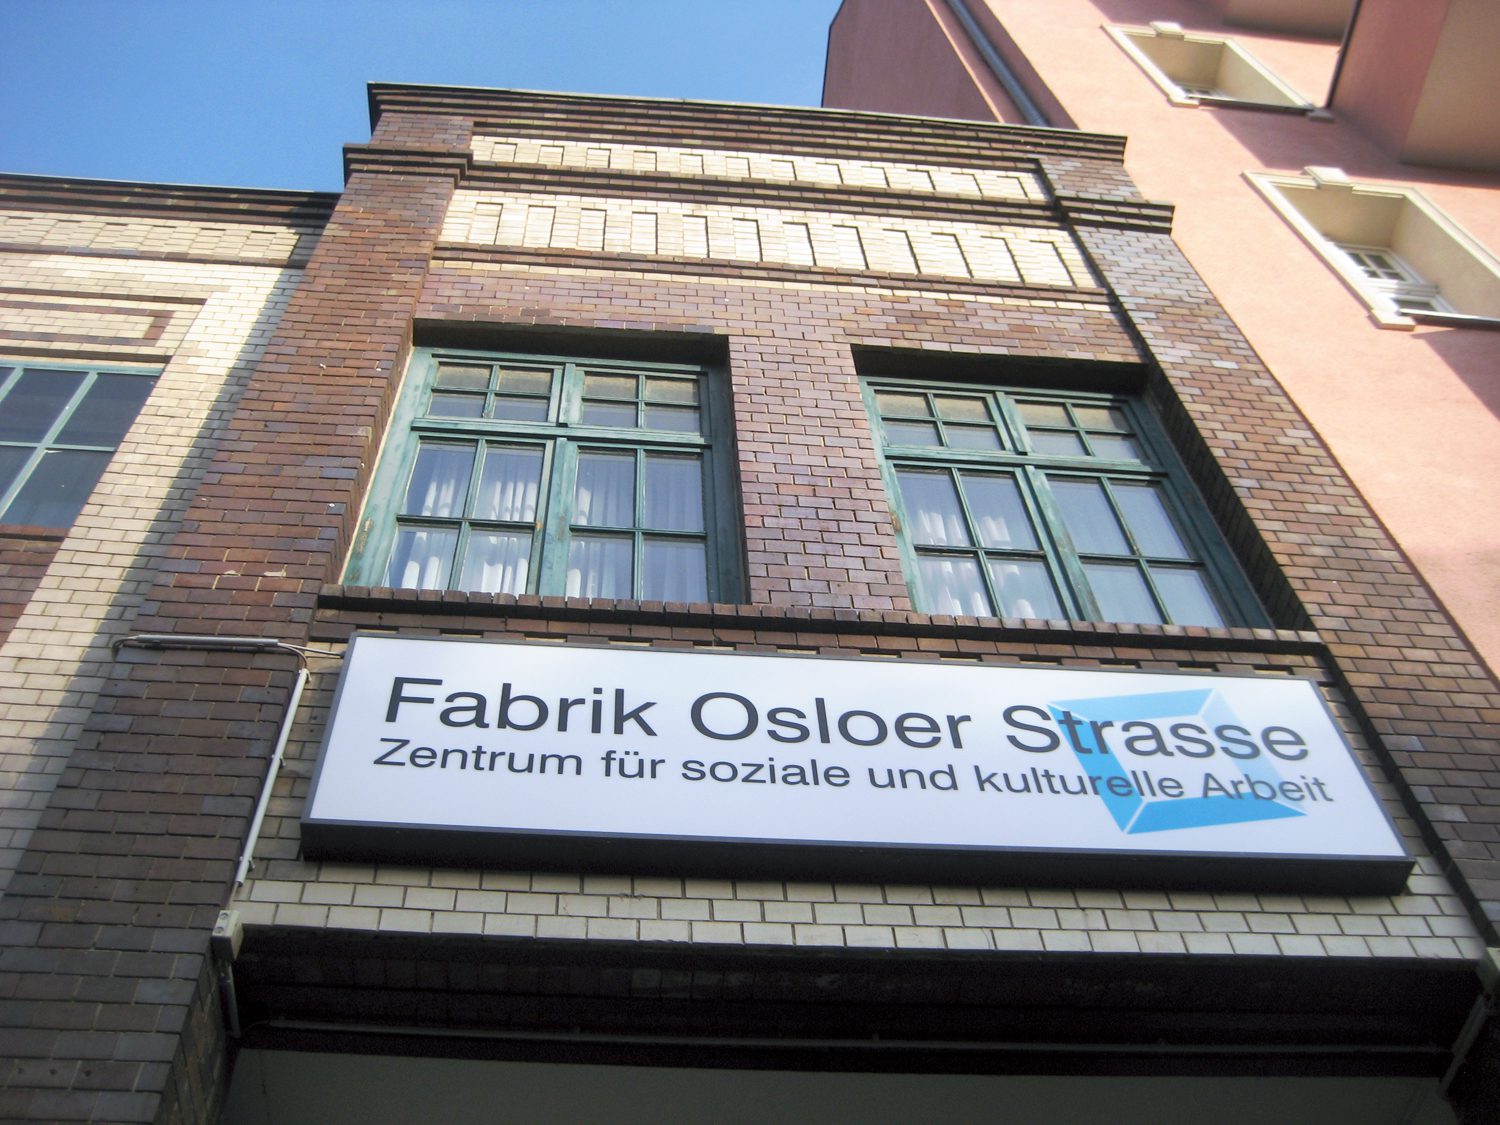 Eingang zum Hof der Fabrik Osloer Straße, wo auch die NachbarschaftsEtage zu Hause ist. Foto: Hensel